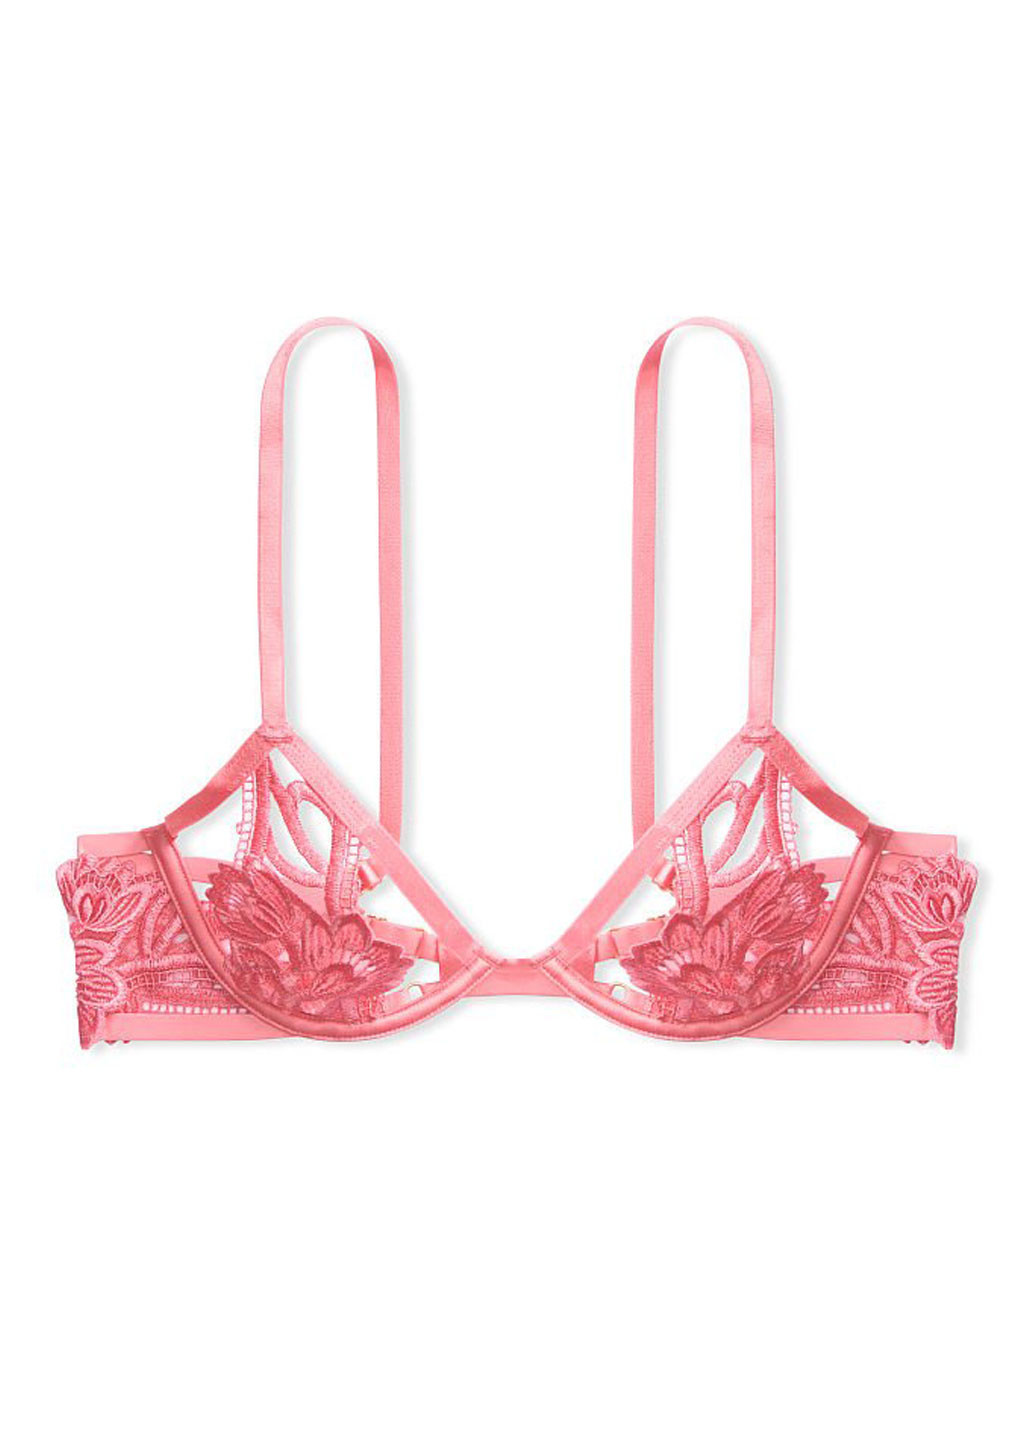 Розовый бюстгальтер Victoria's Secret с косточками полиамид